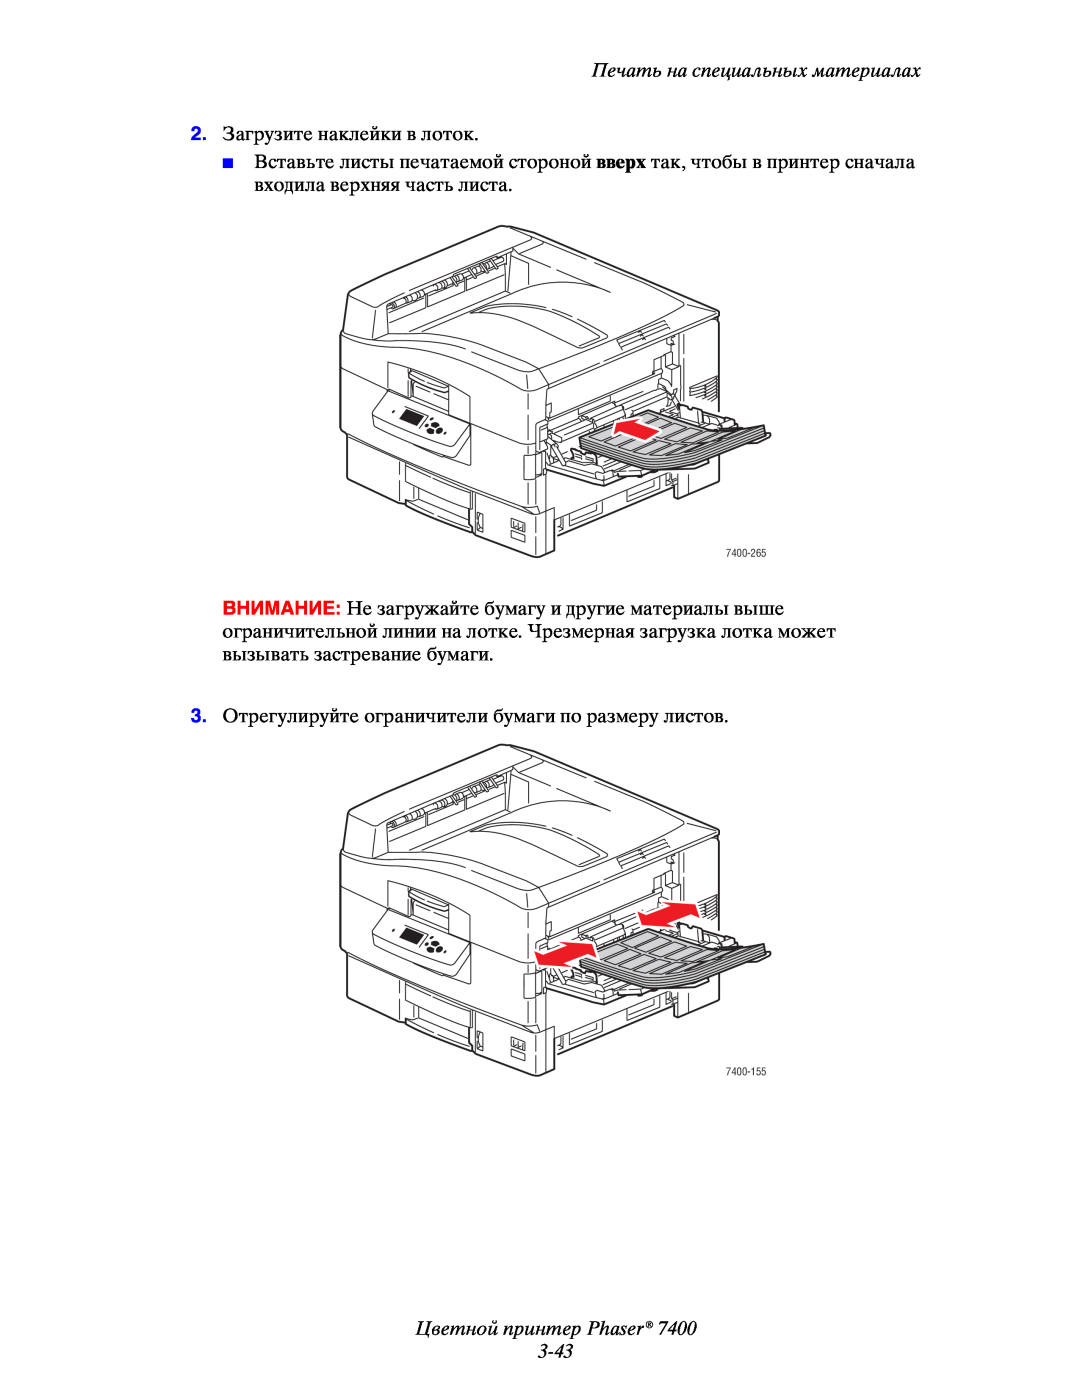 Xerox 7400 manual Цветной принтер Phaser 3-43, Печать на специальных материалах, 2.Загрузите наклейки в лоток 